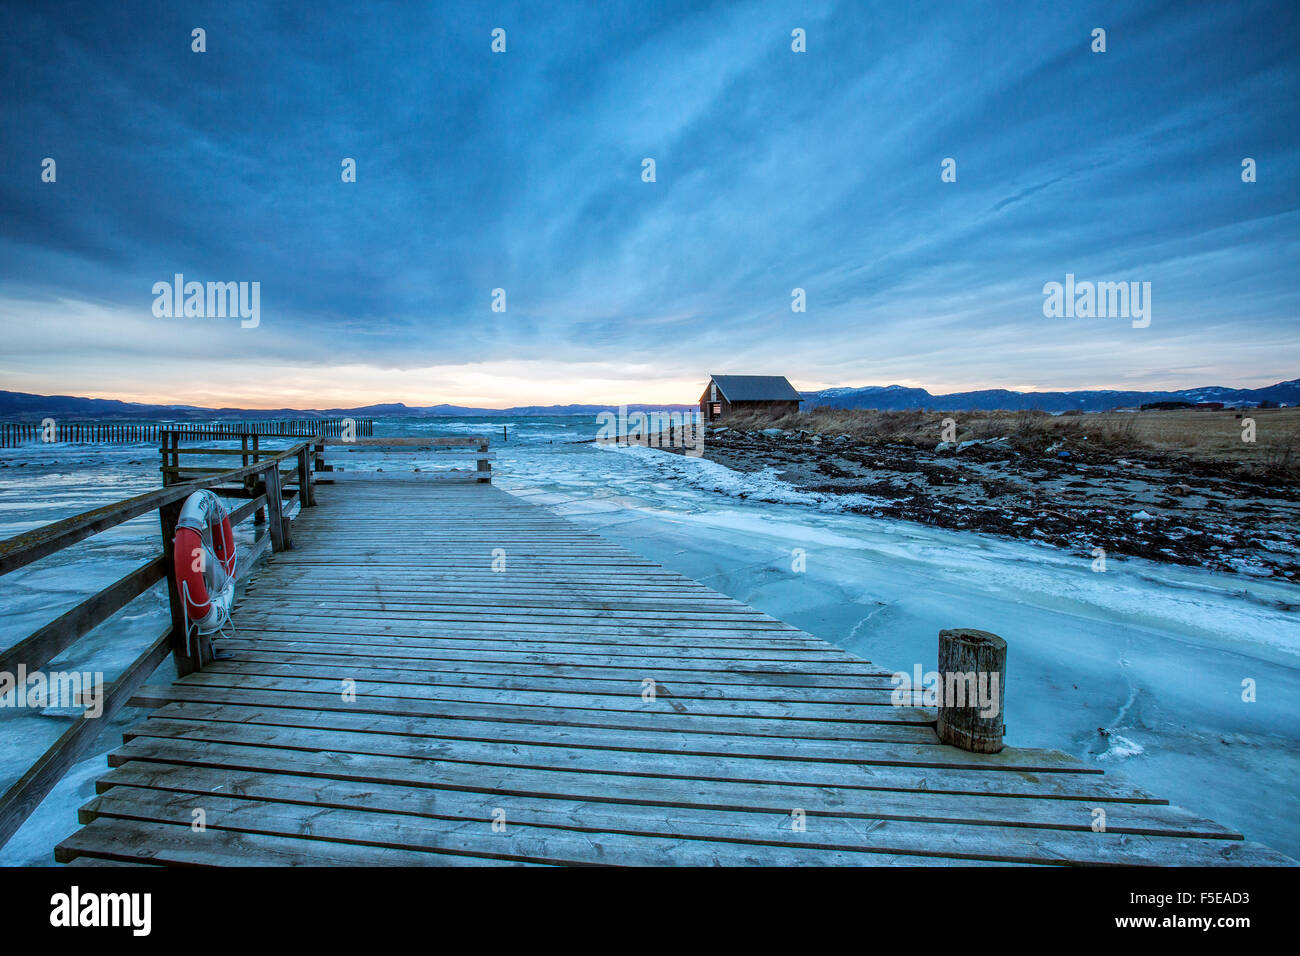 Il ponte di legno nel mare ghiacciato, Kystensarv, il Trondelag, Norvegia, Scandinavia, Europa Foto Stock